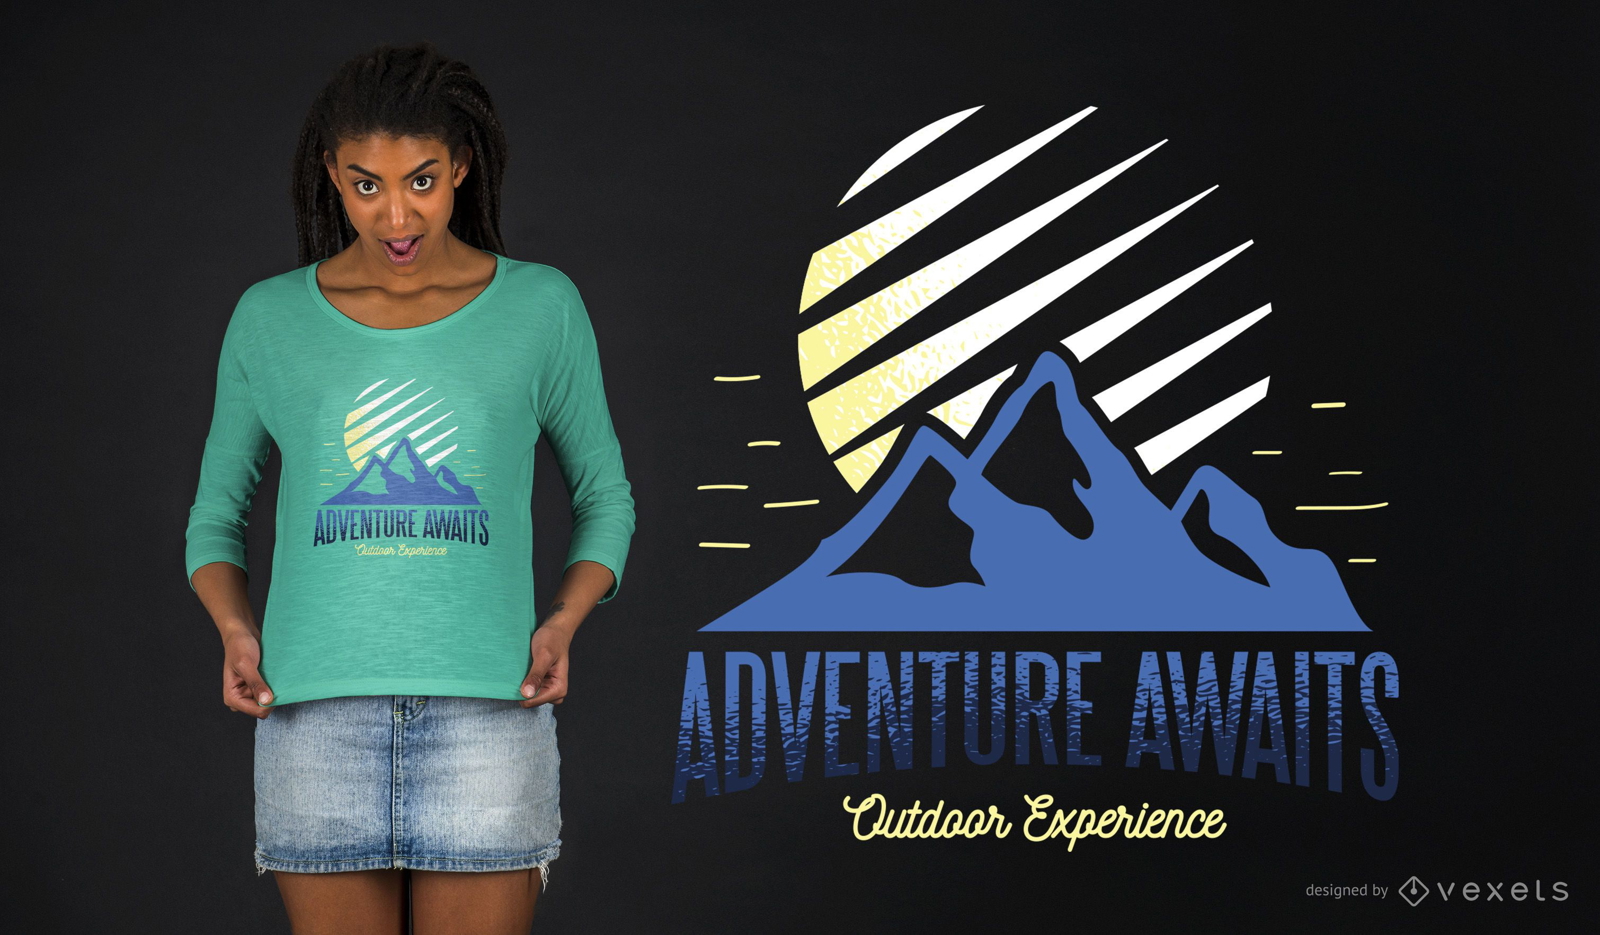 Adventure Awaits Outdoor Experience T-shirt Design